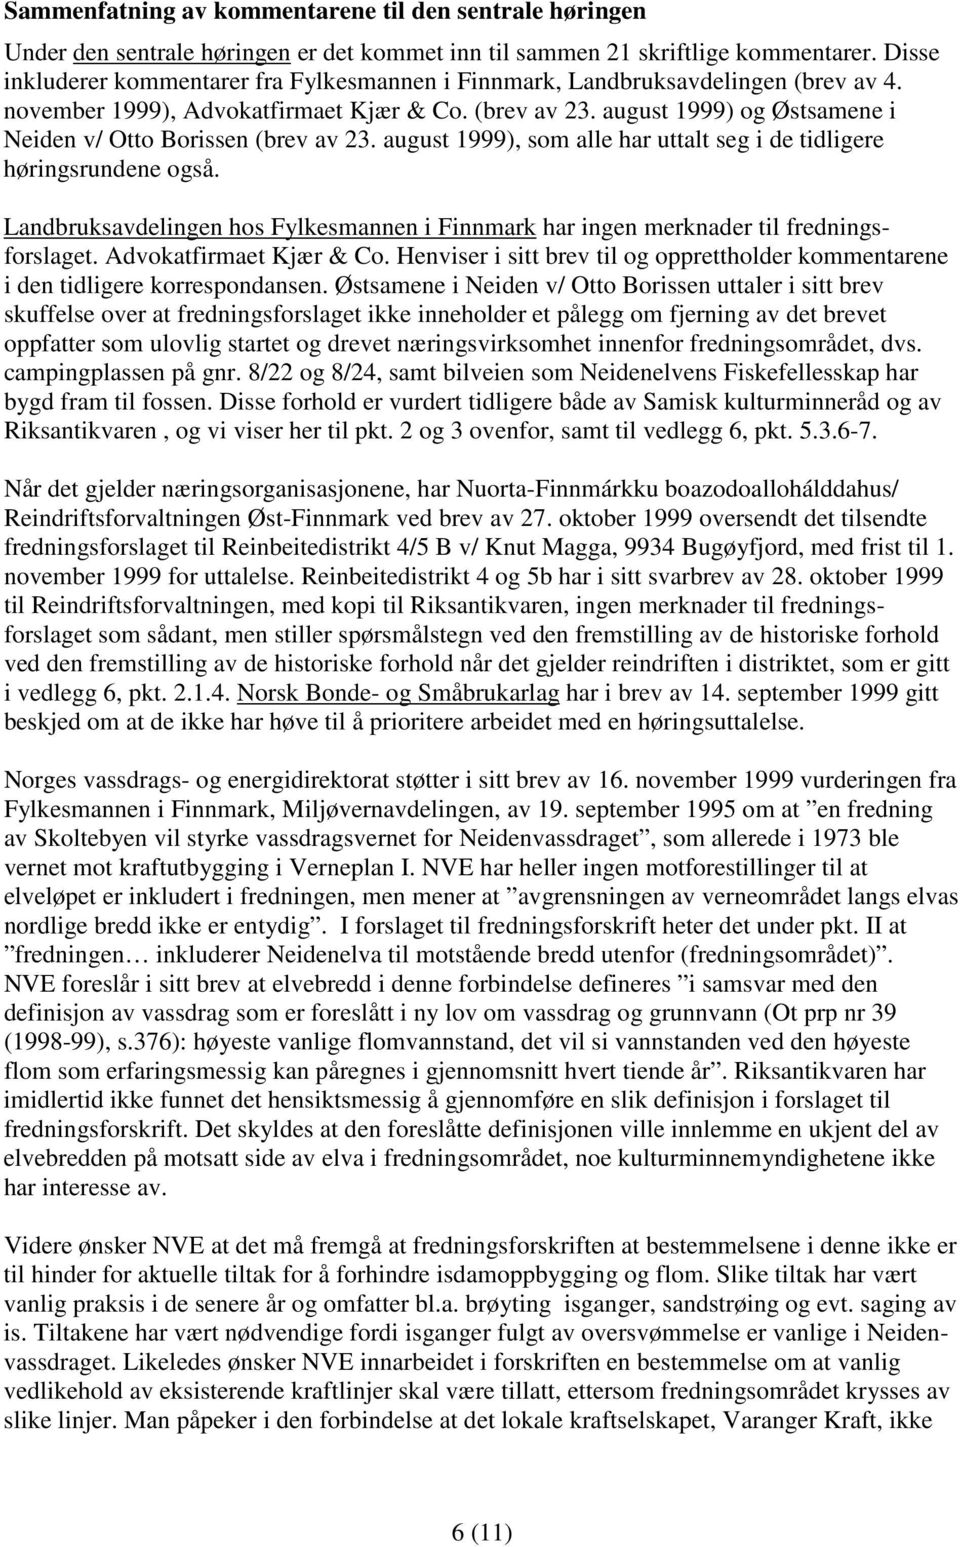 august 1999) og Østsamene i Neiden v/ Otto Borissen (brev av 23. august 1999), som alle har uttalt seg i de tidligere høringsrundene også.